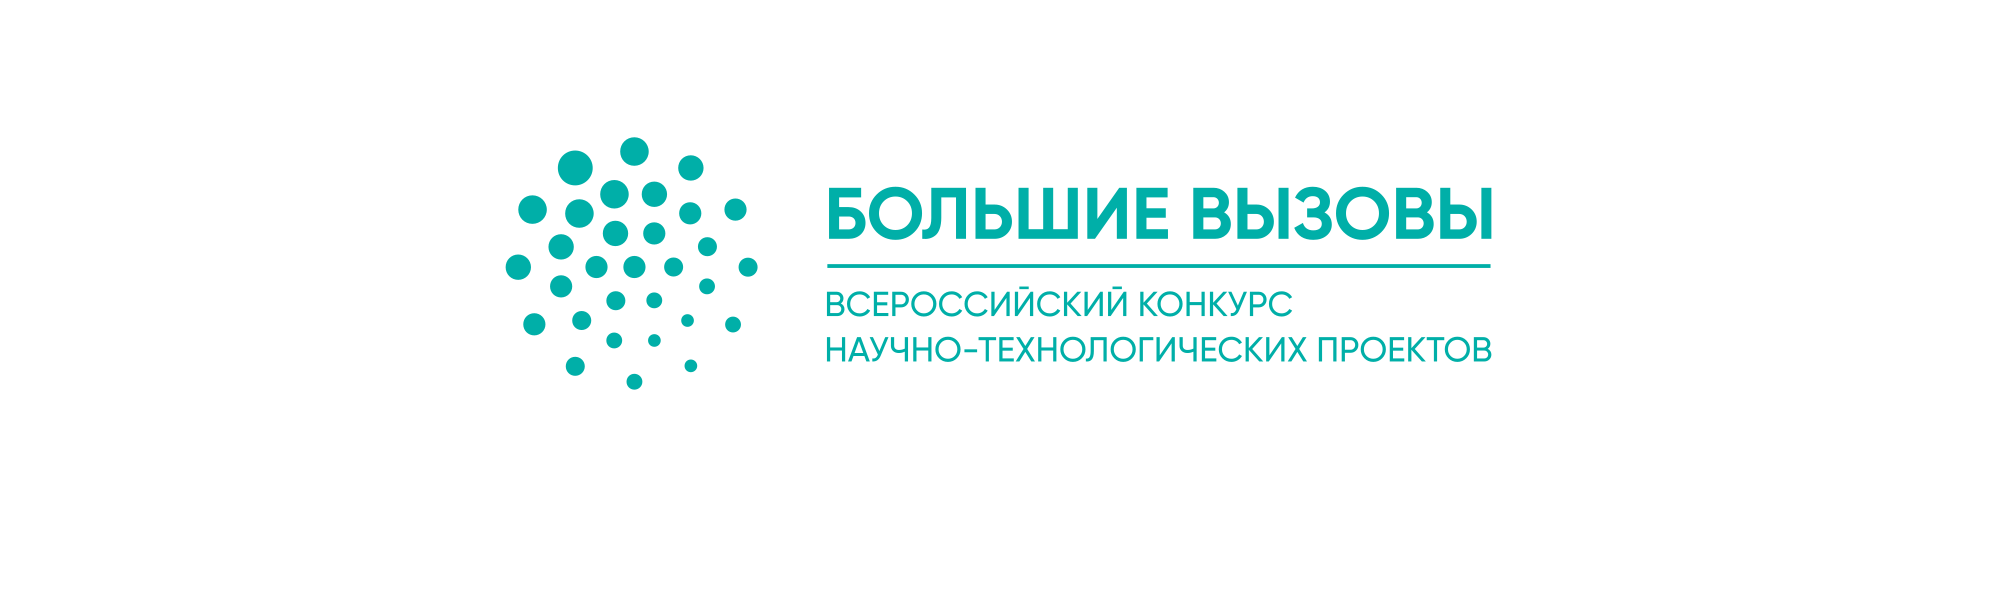 Всероссийский конкурс научно-технологических проектов “Большие вызовы”